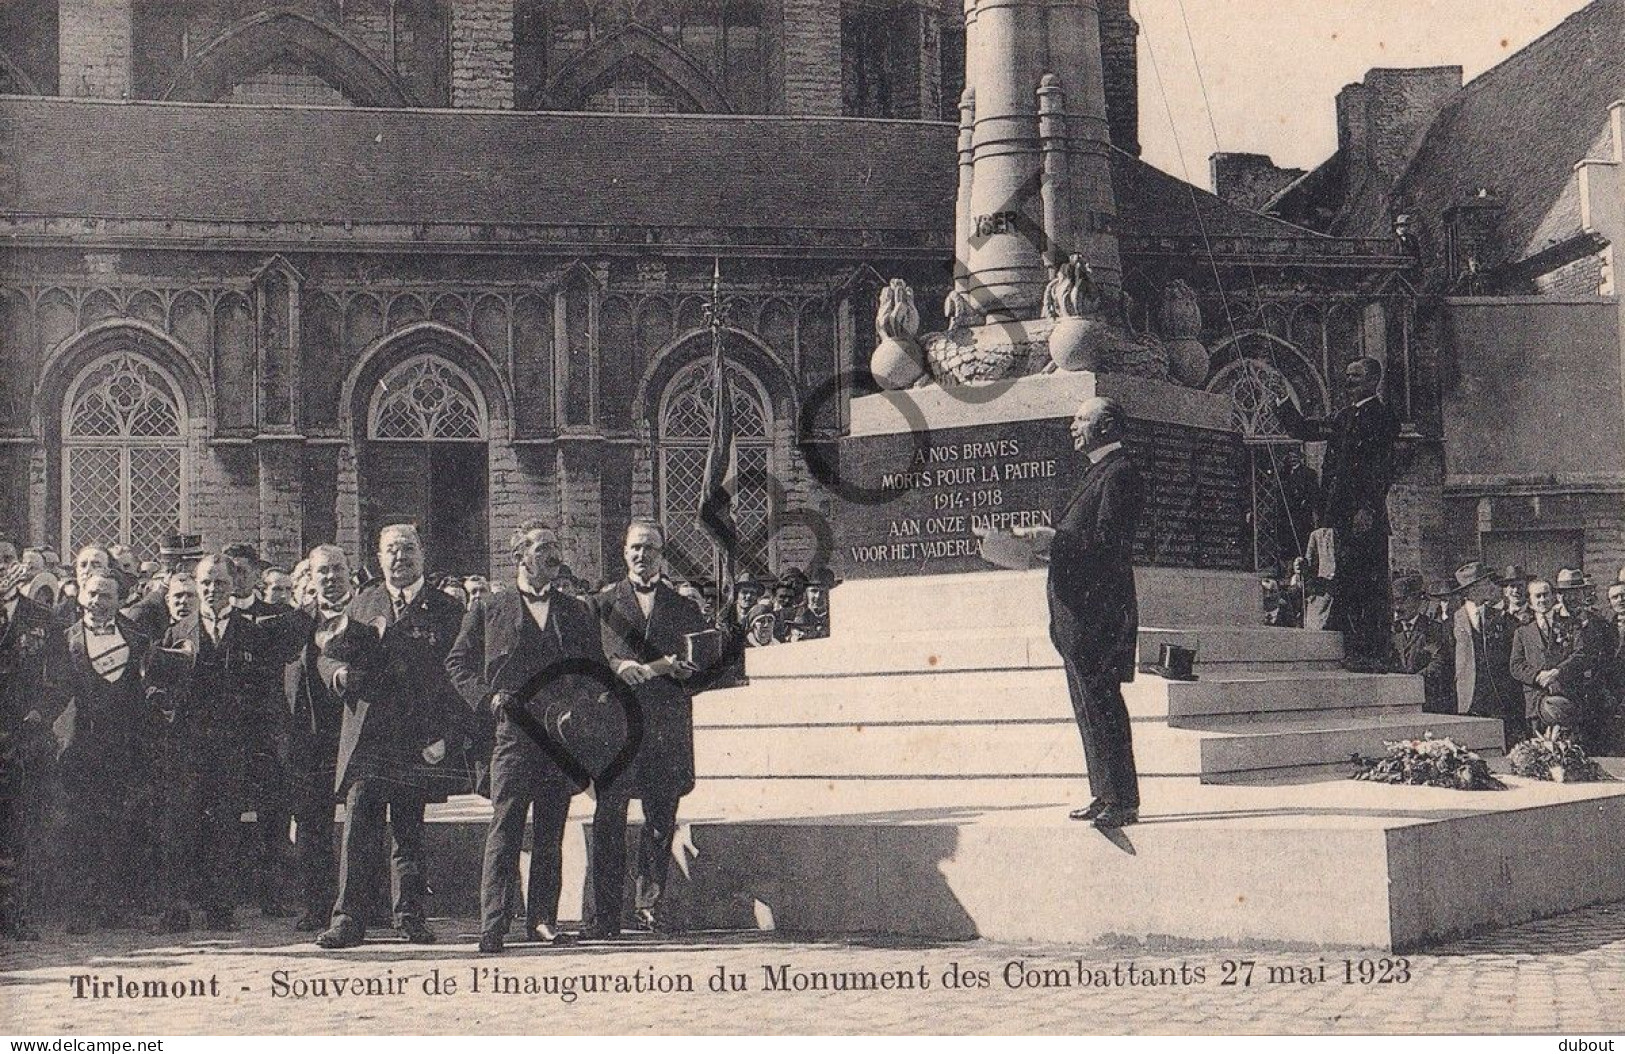 Postkaart - Carte Postale - Tienen/Tirlemont - Inauguration du Monument des Combattants 1923 12 kaarten!! (C5788)